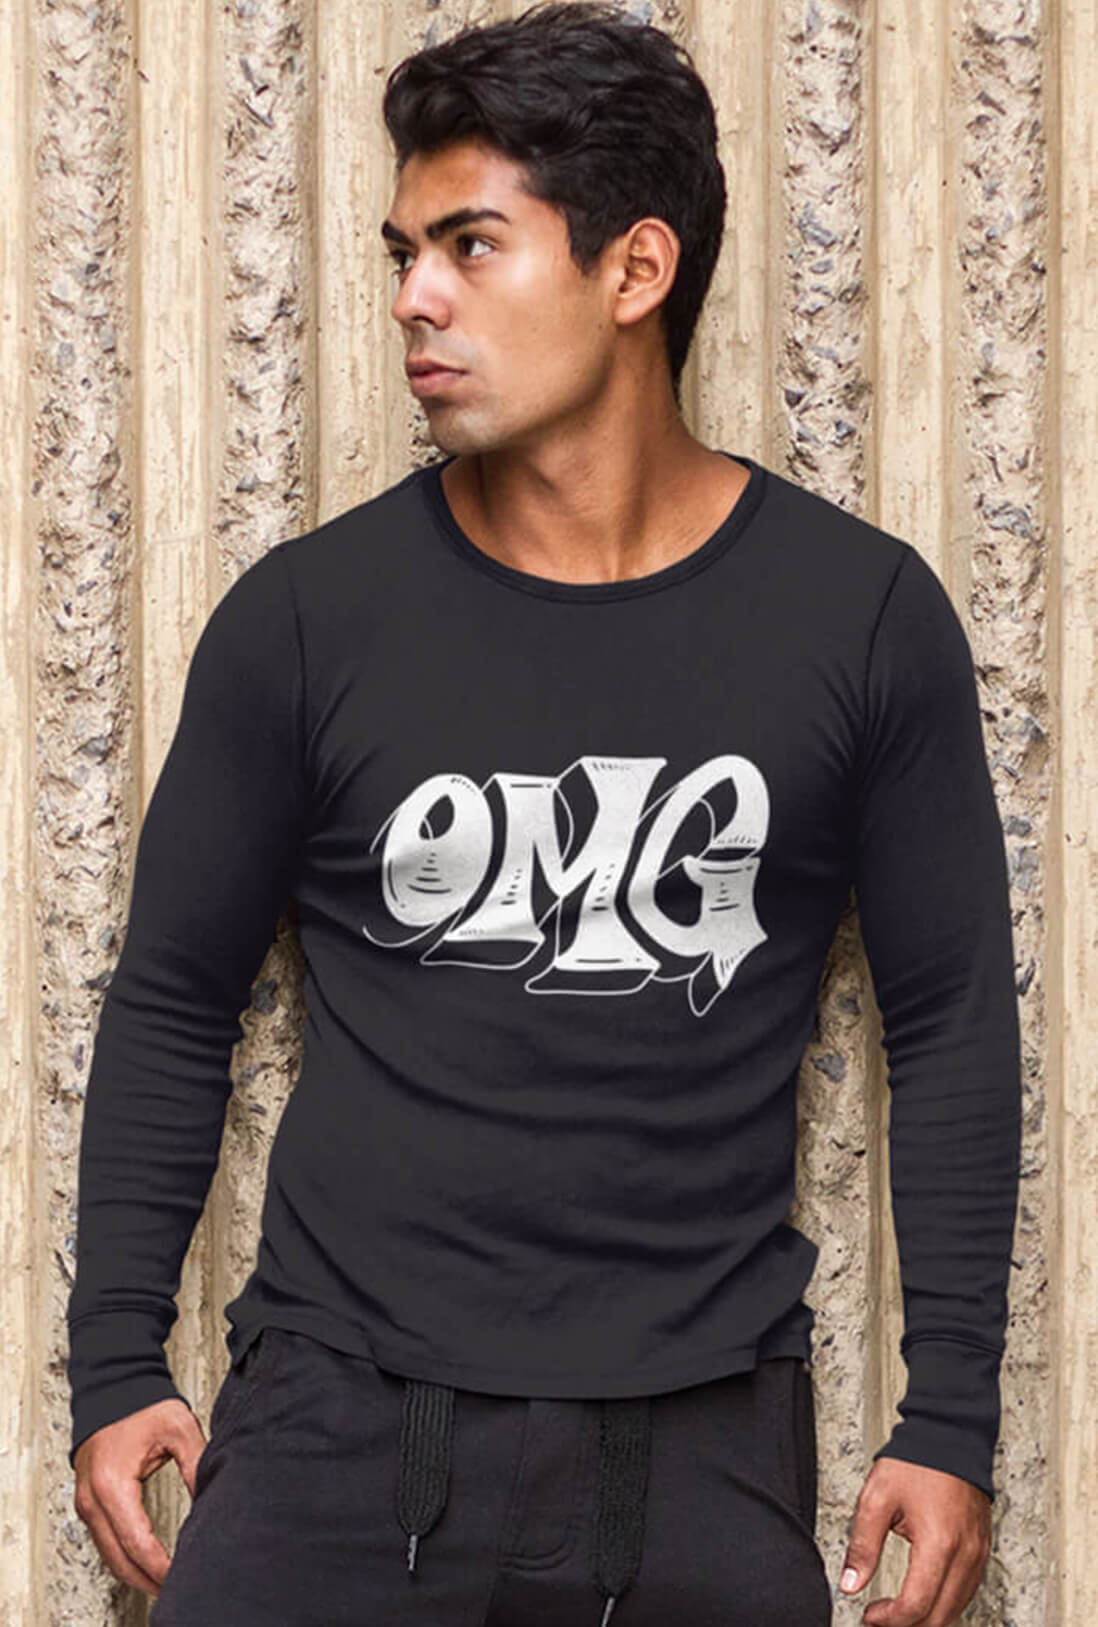 OMG Men's Full Sleeve T-Shirt